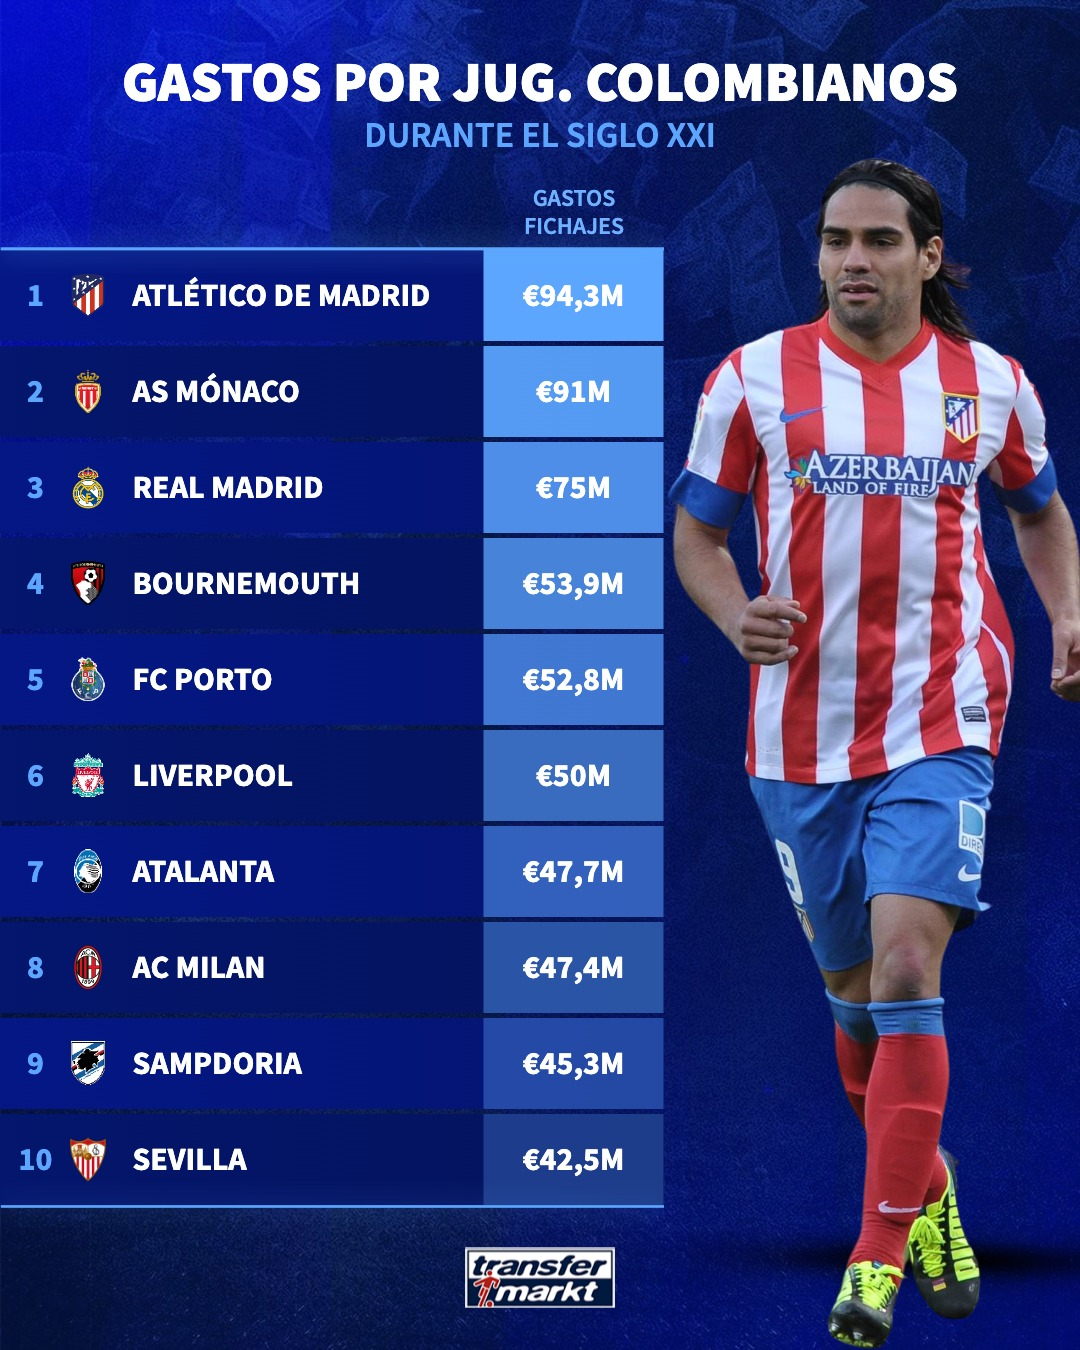 Atlético de Madrid Fichajes colombianos - Los fichajes colombianos que convirtieron a Atlético Madrid en el equipo que más ha gastado en cafeteros